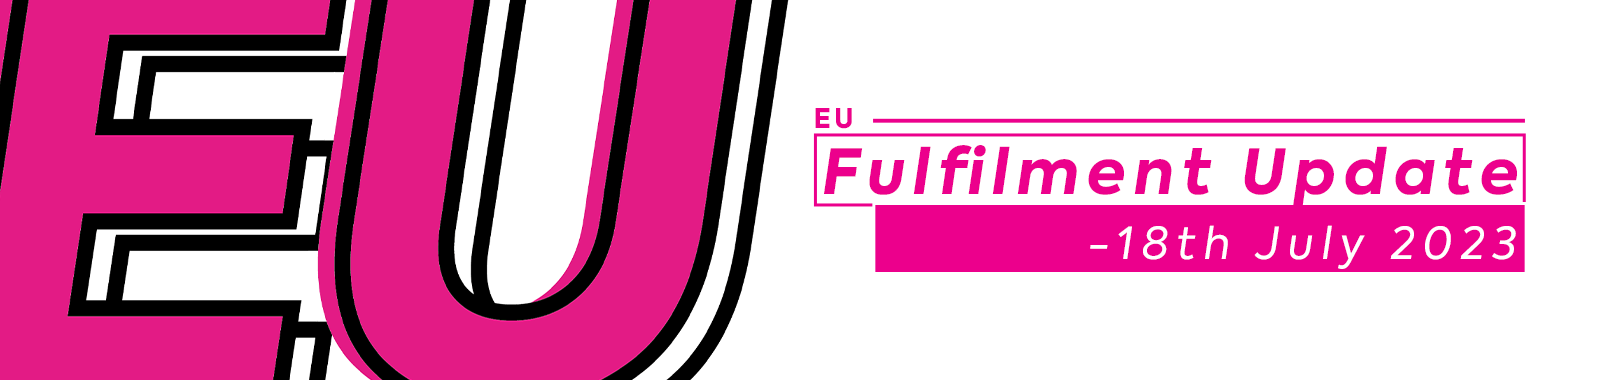 EU Fulfilment Update -18th July